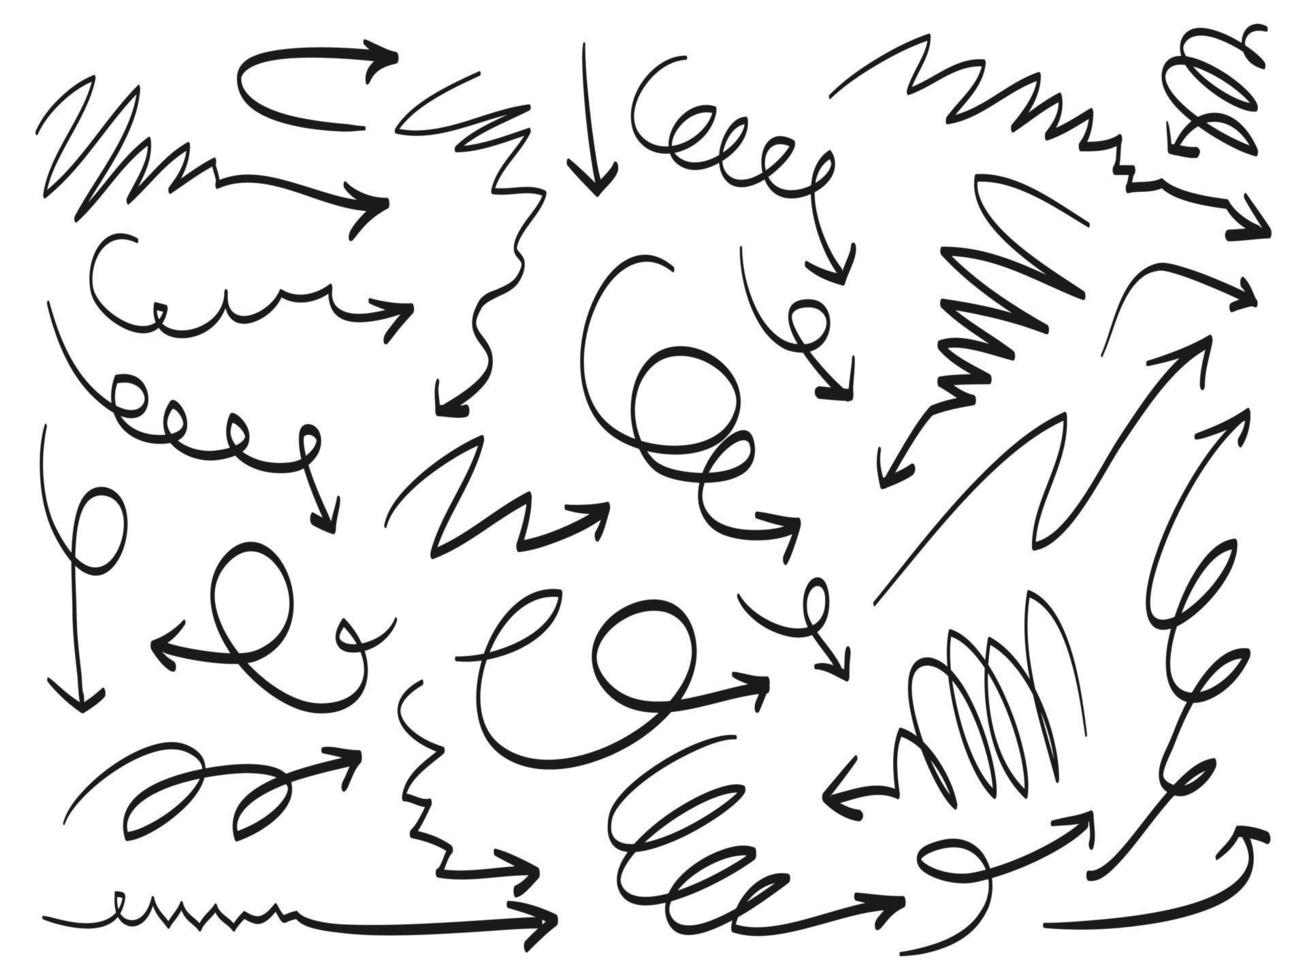 doodle conjunto de ícones de setas. ícone de seta com várias direções. estilo desenhado à mão. Isolado em um fundo branco. ilustração vetorial vetor